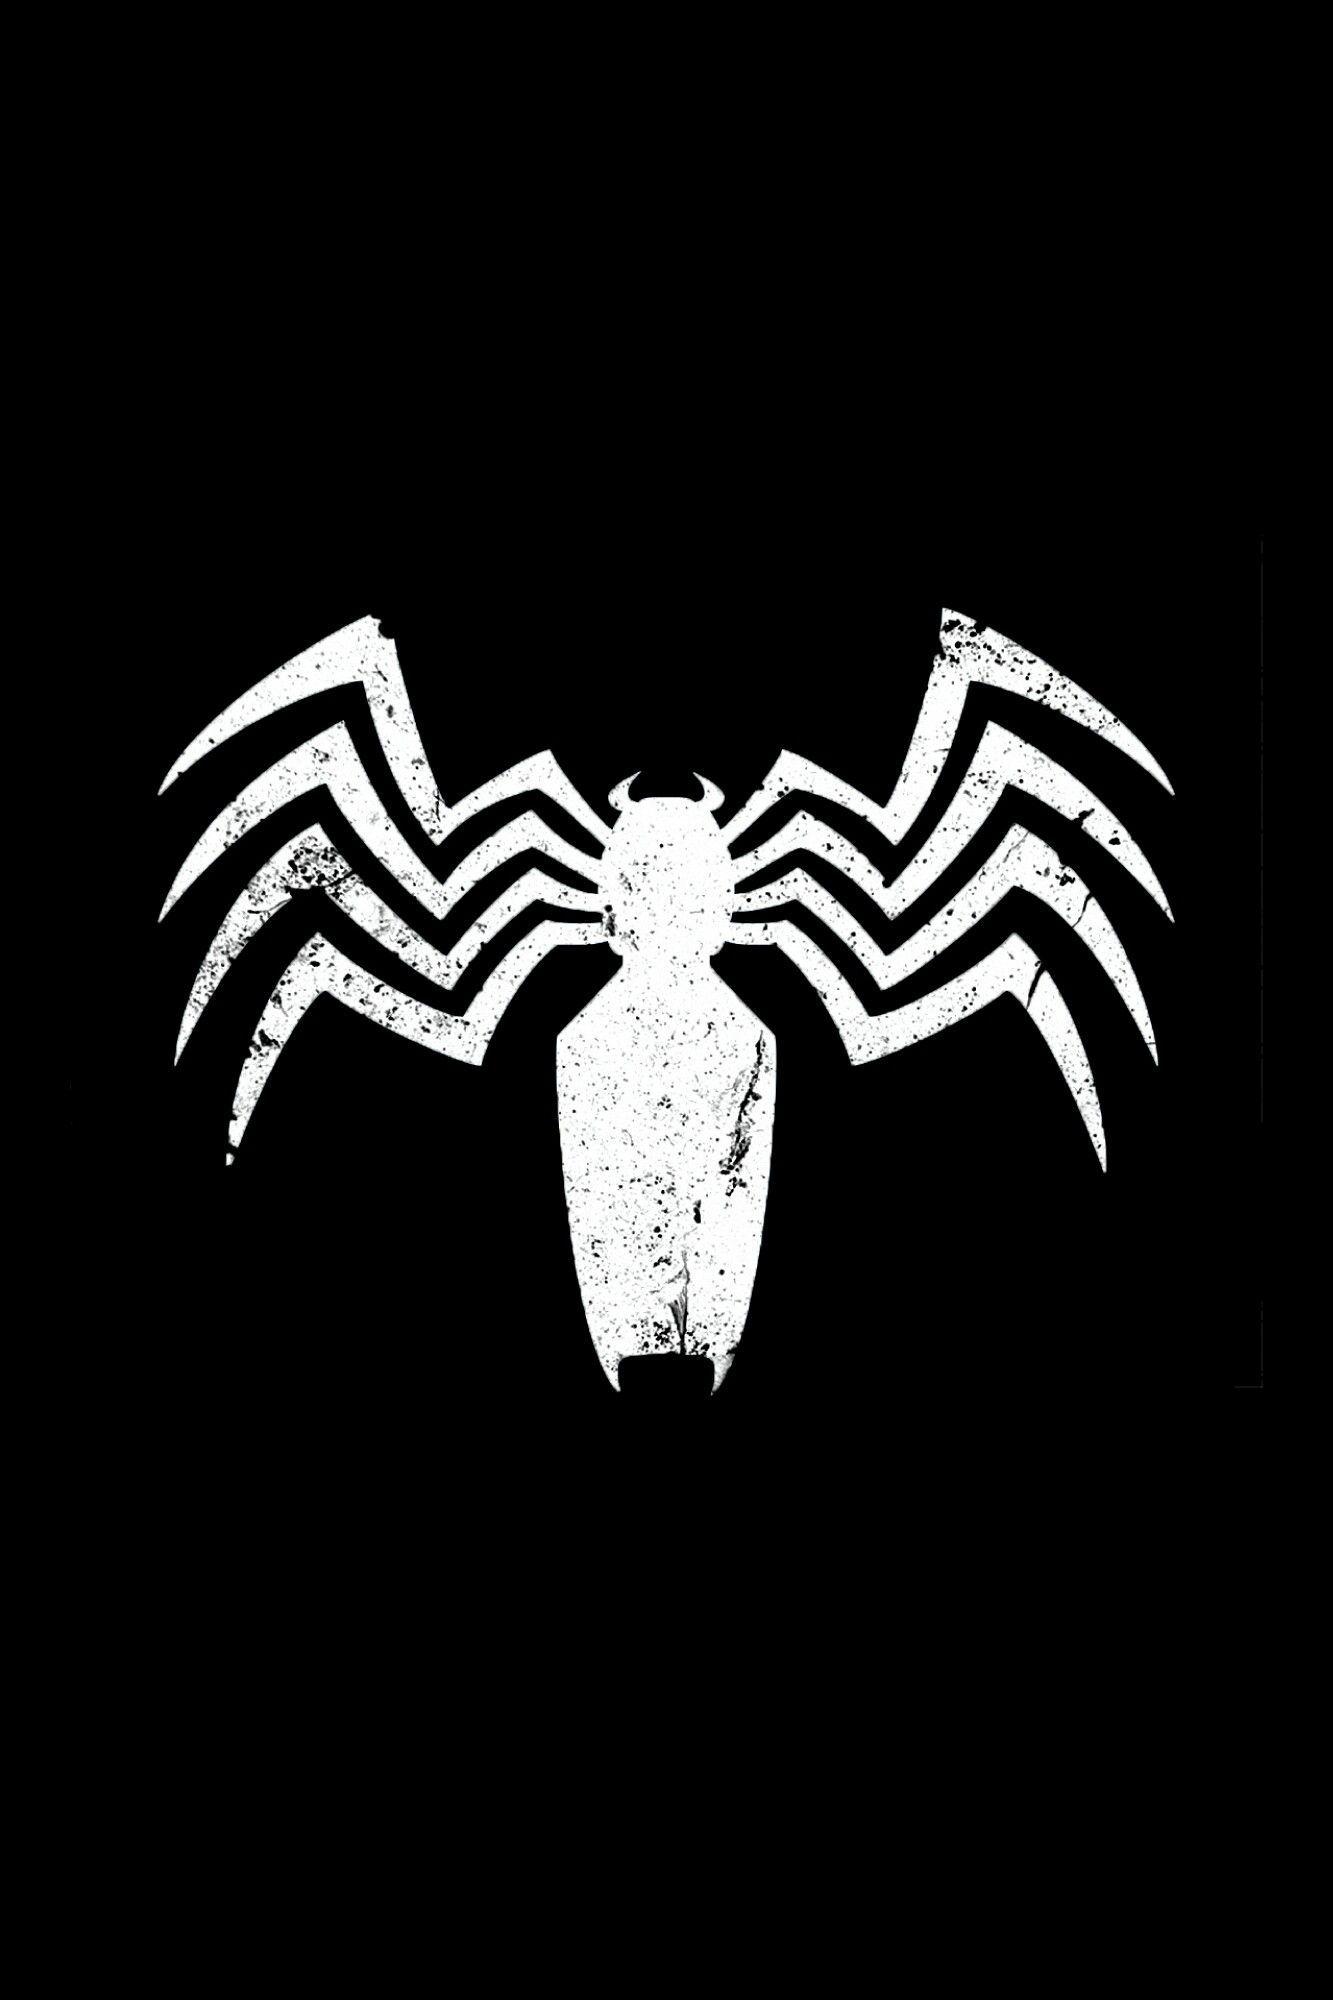 Spider-Man Venom Logo - Venom Logo. The Amazing Spider Man. Spiderman, Venom, Venom Comics